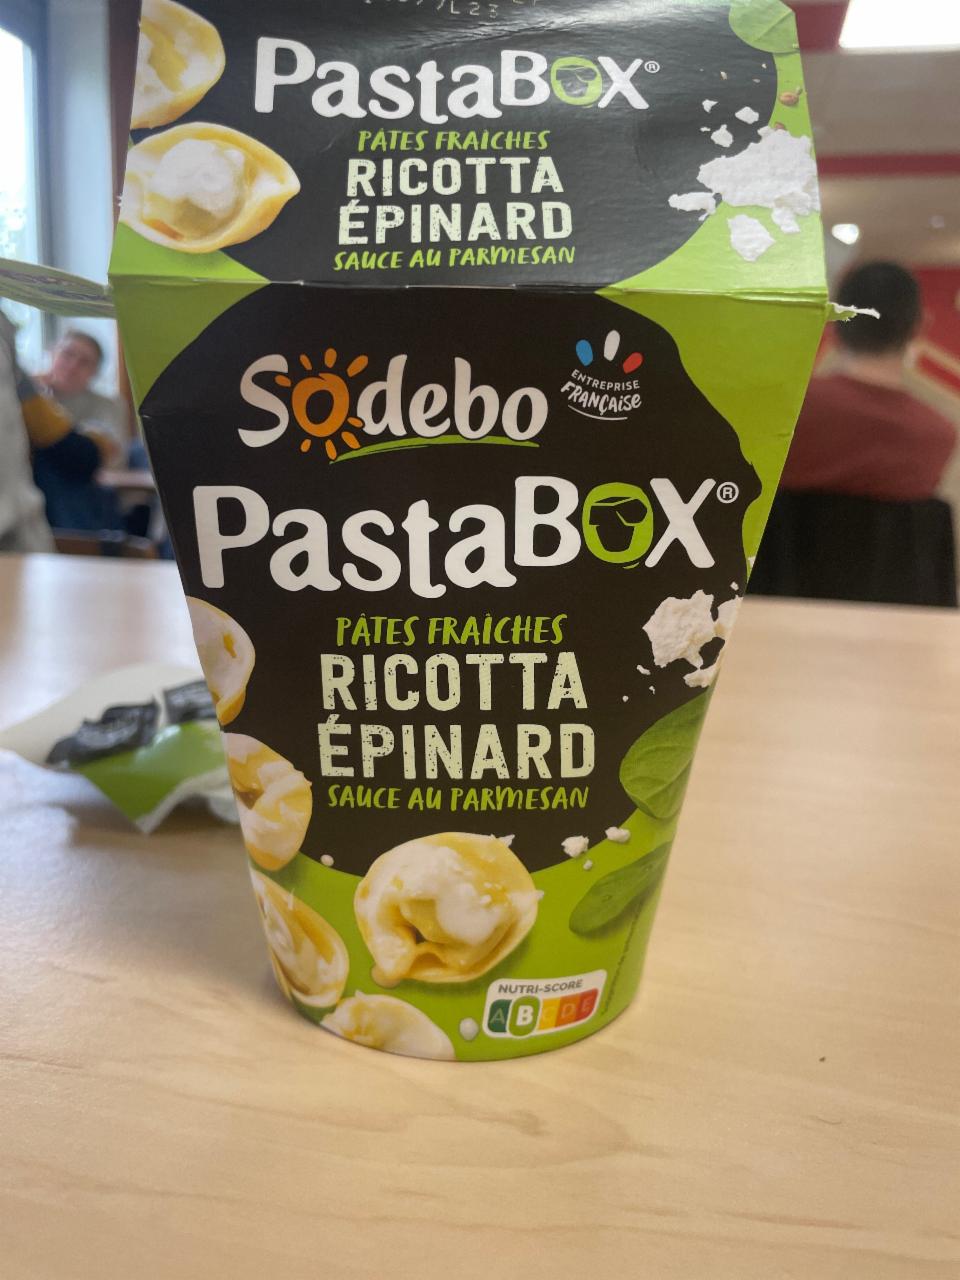 Фото - PastaBOX pâtes fraîches Ricotta Épinard Sodebo